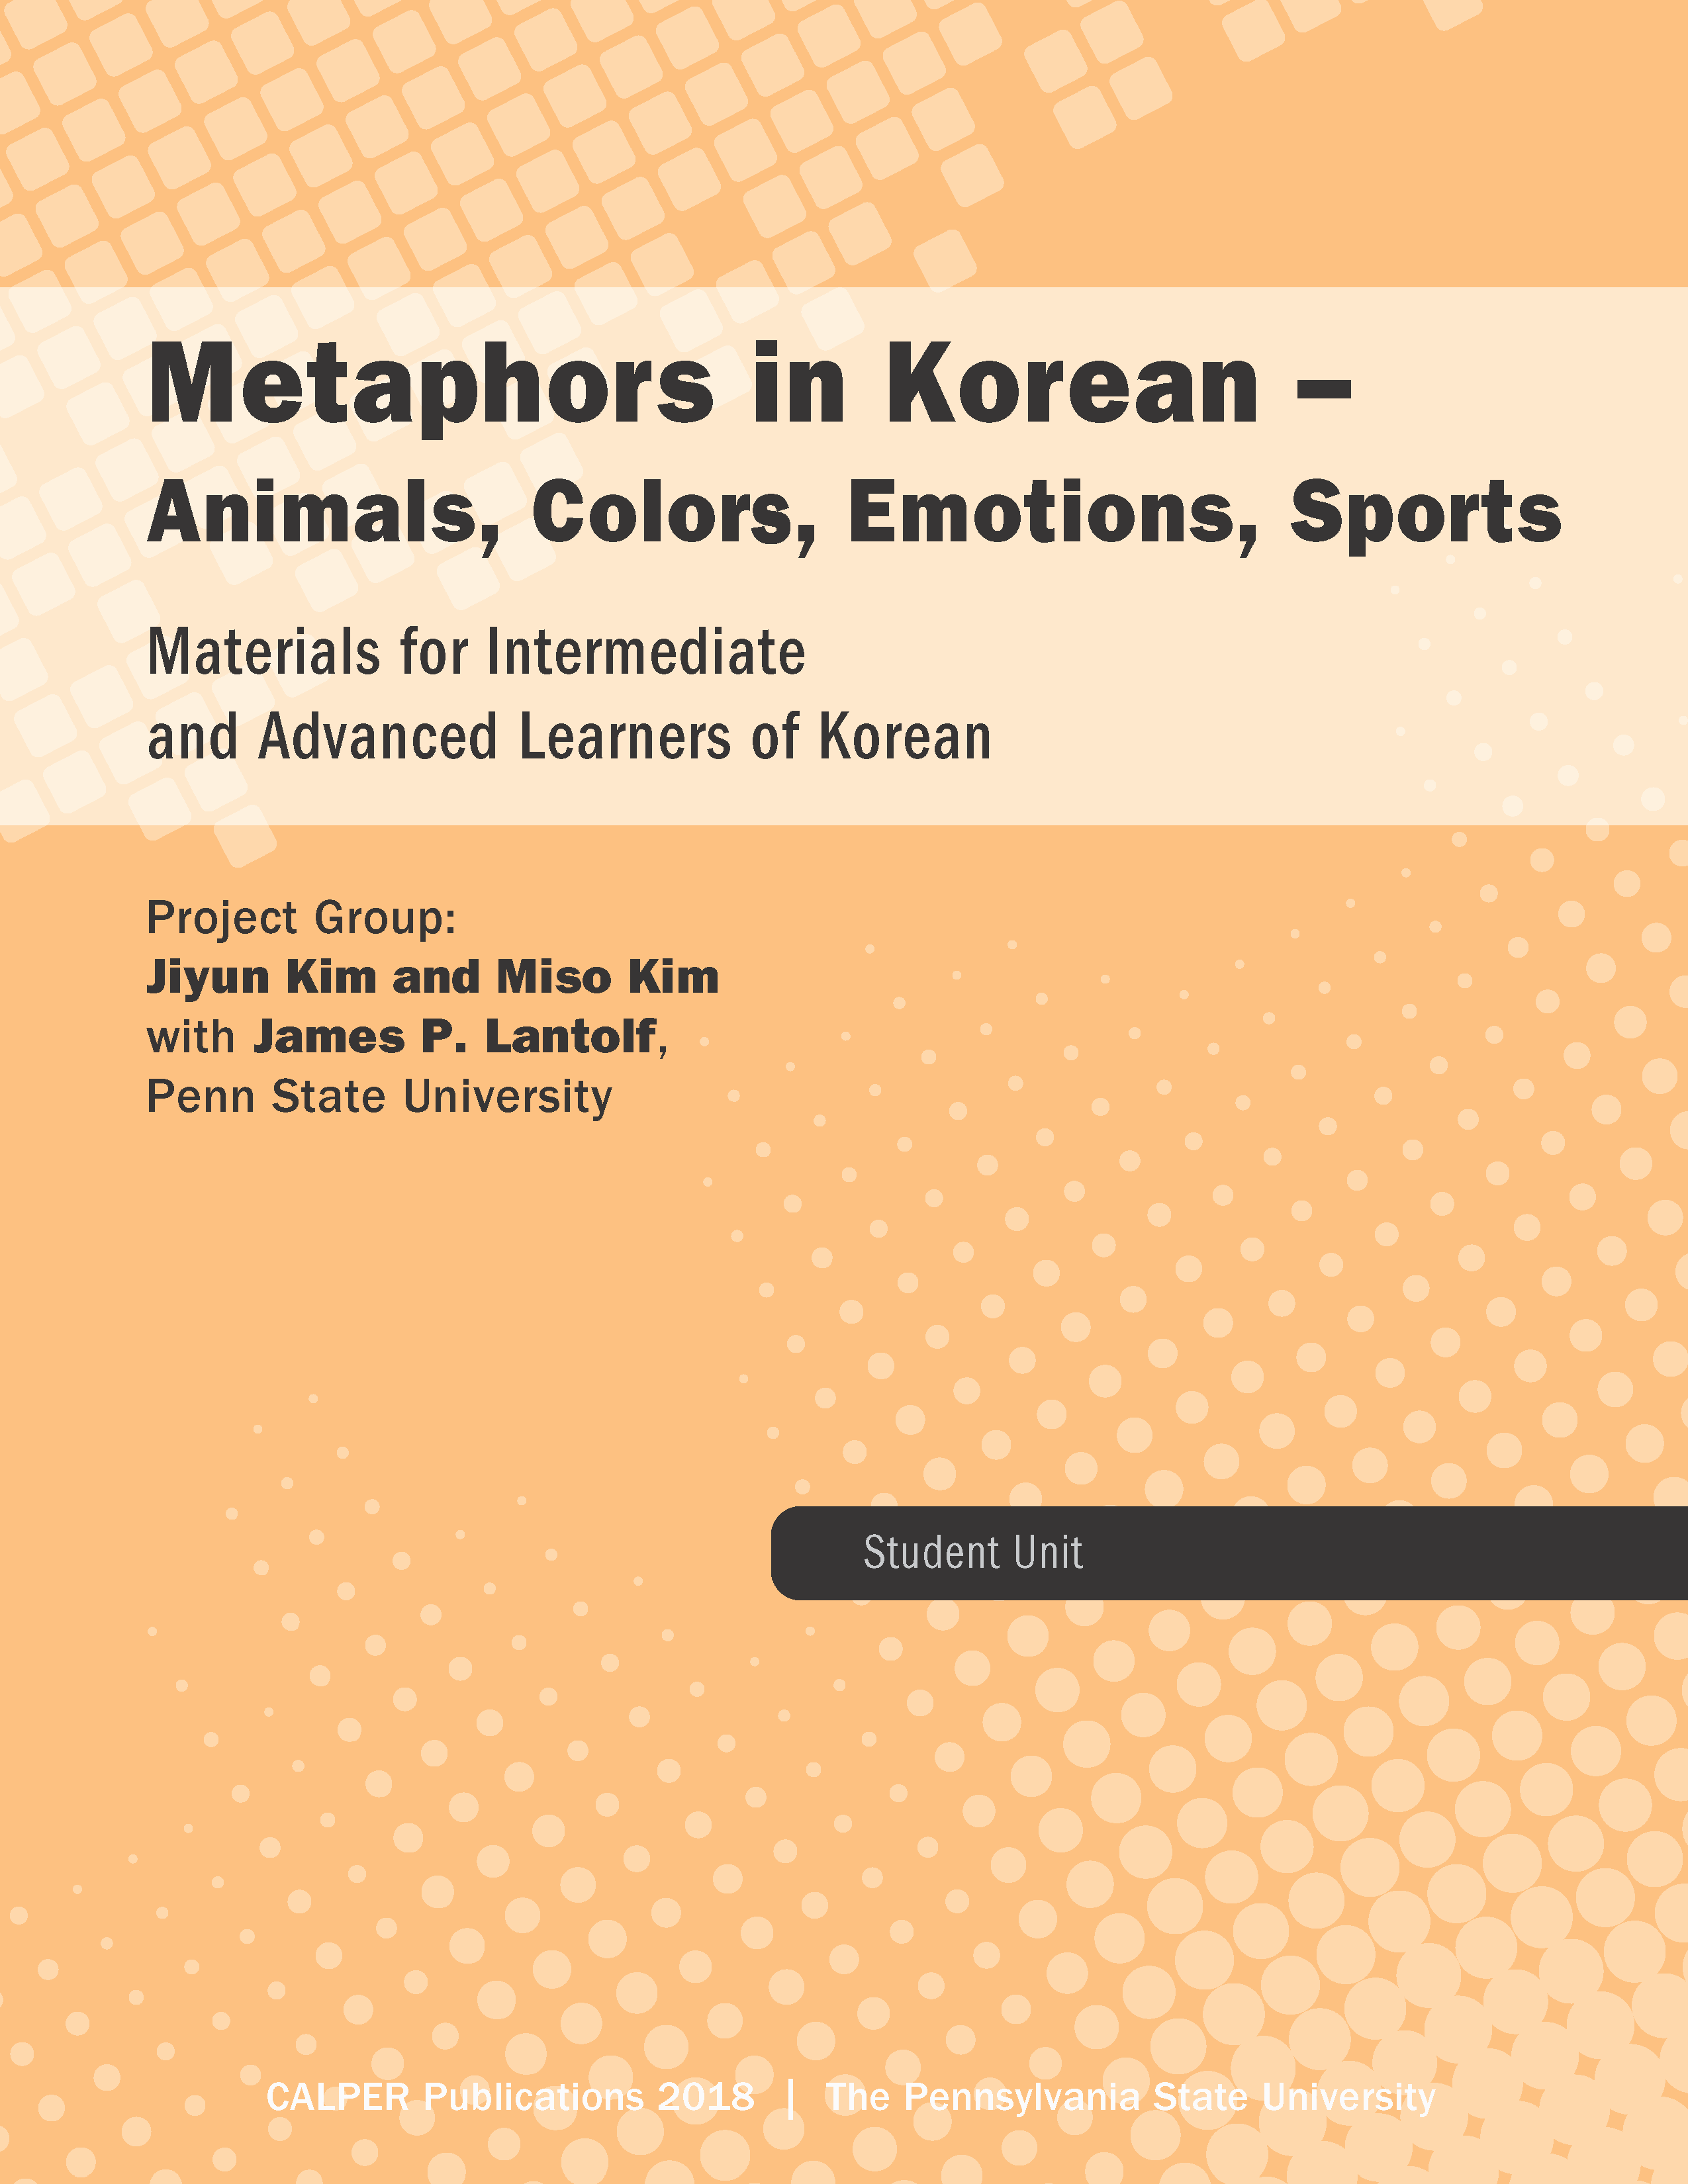 Metaphors in Korean Cover Image